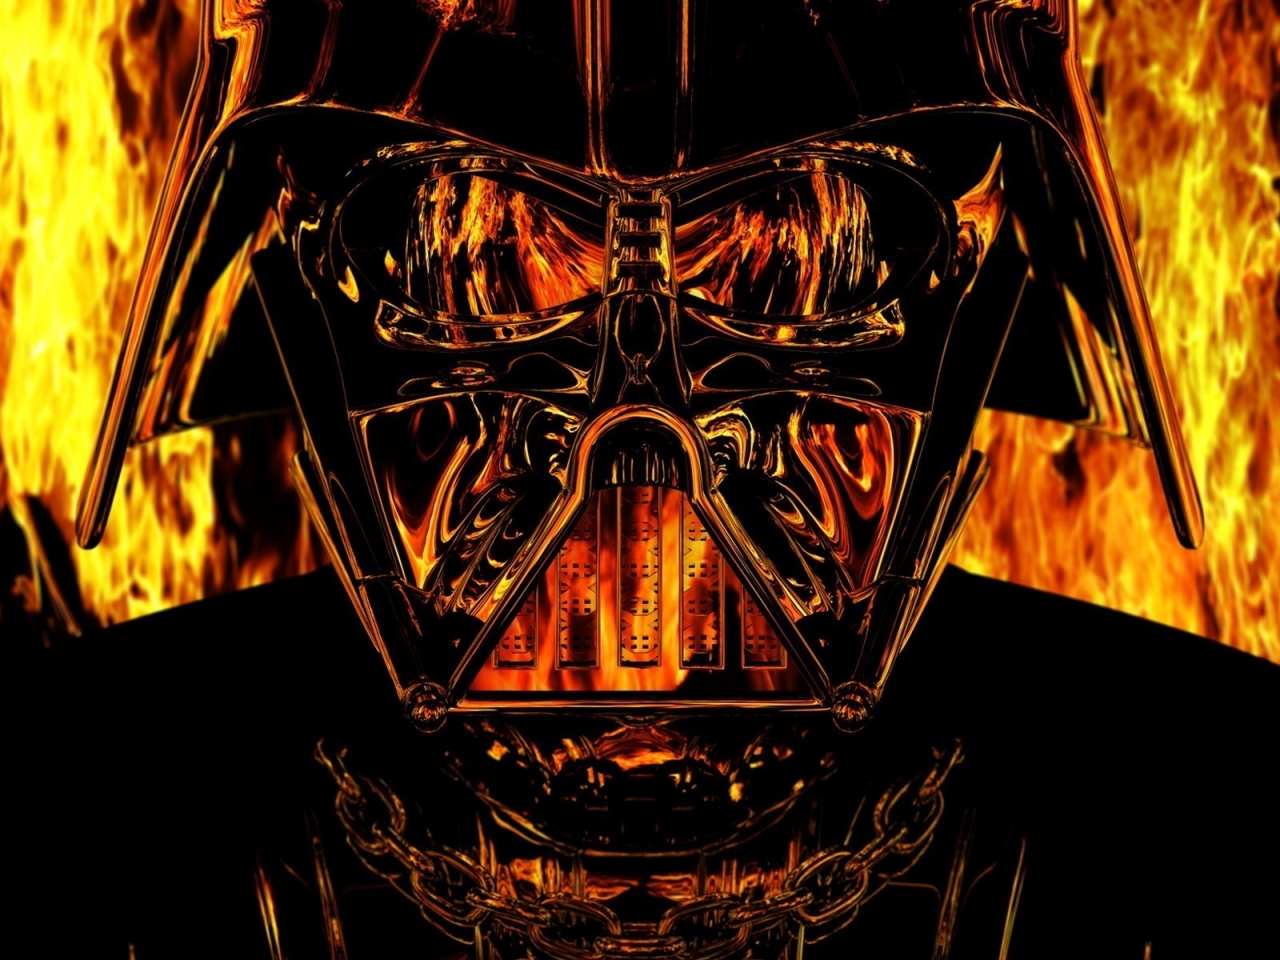 Darth Vader Star Wars for 1280 x 960 resolution